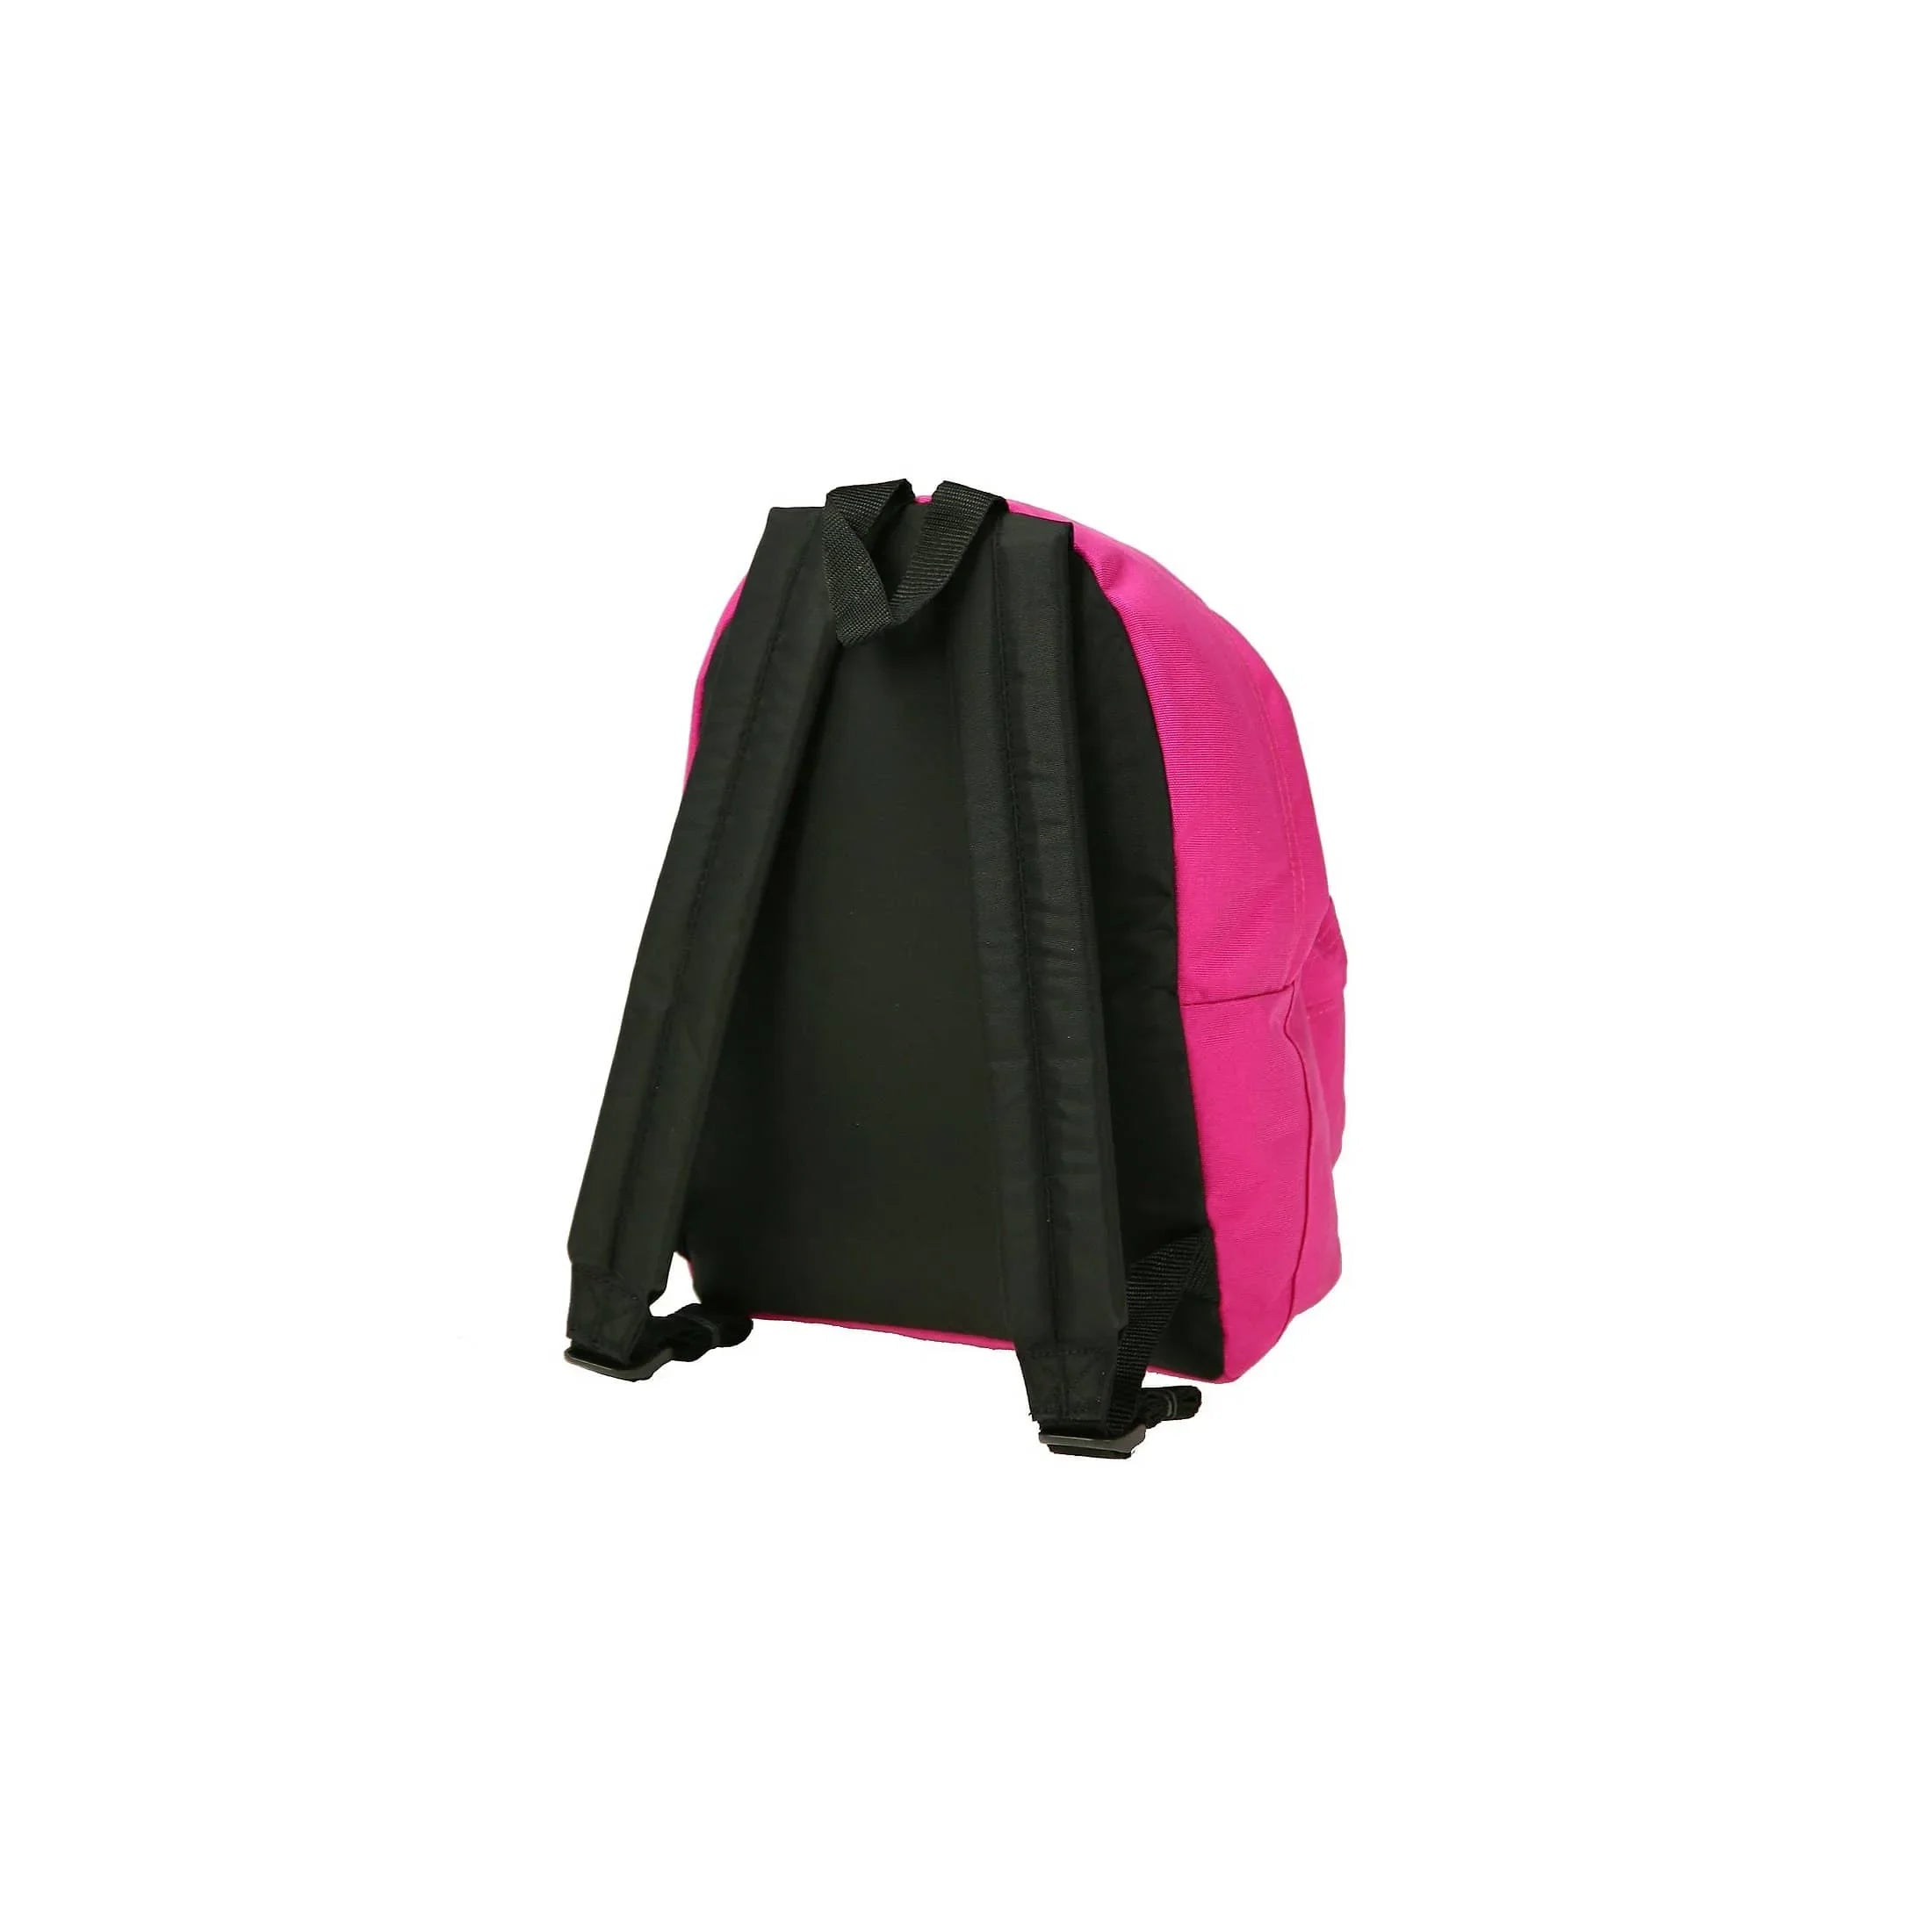 Eastpak Authentic Orbit sac à dos de loisirs 33 cm - denim noir